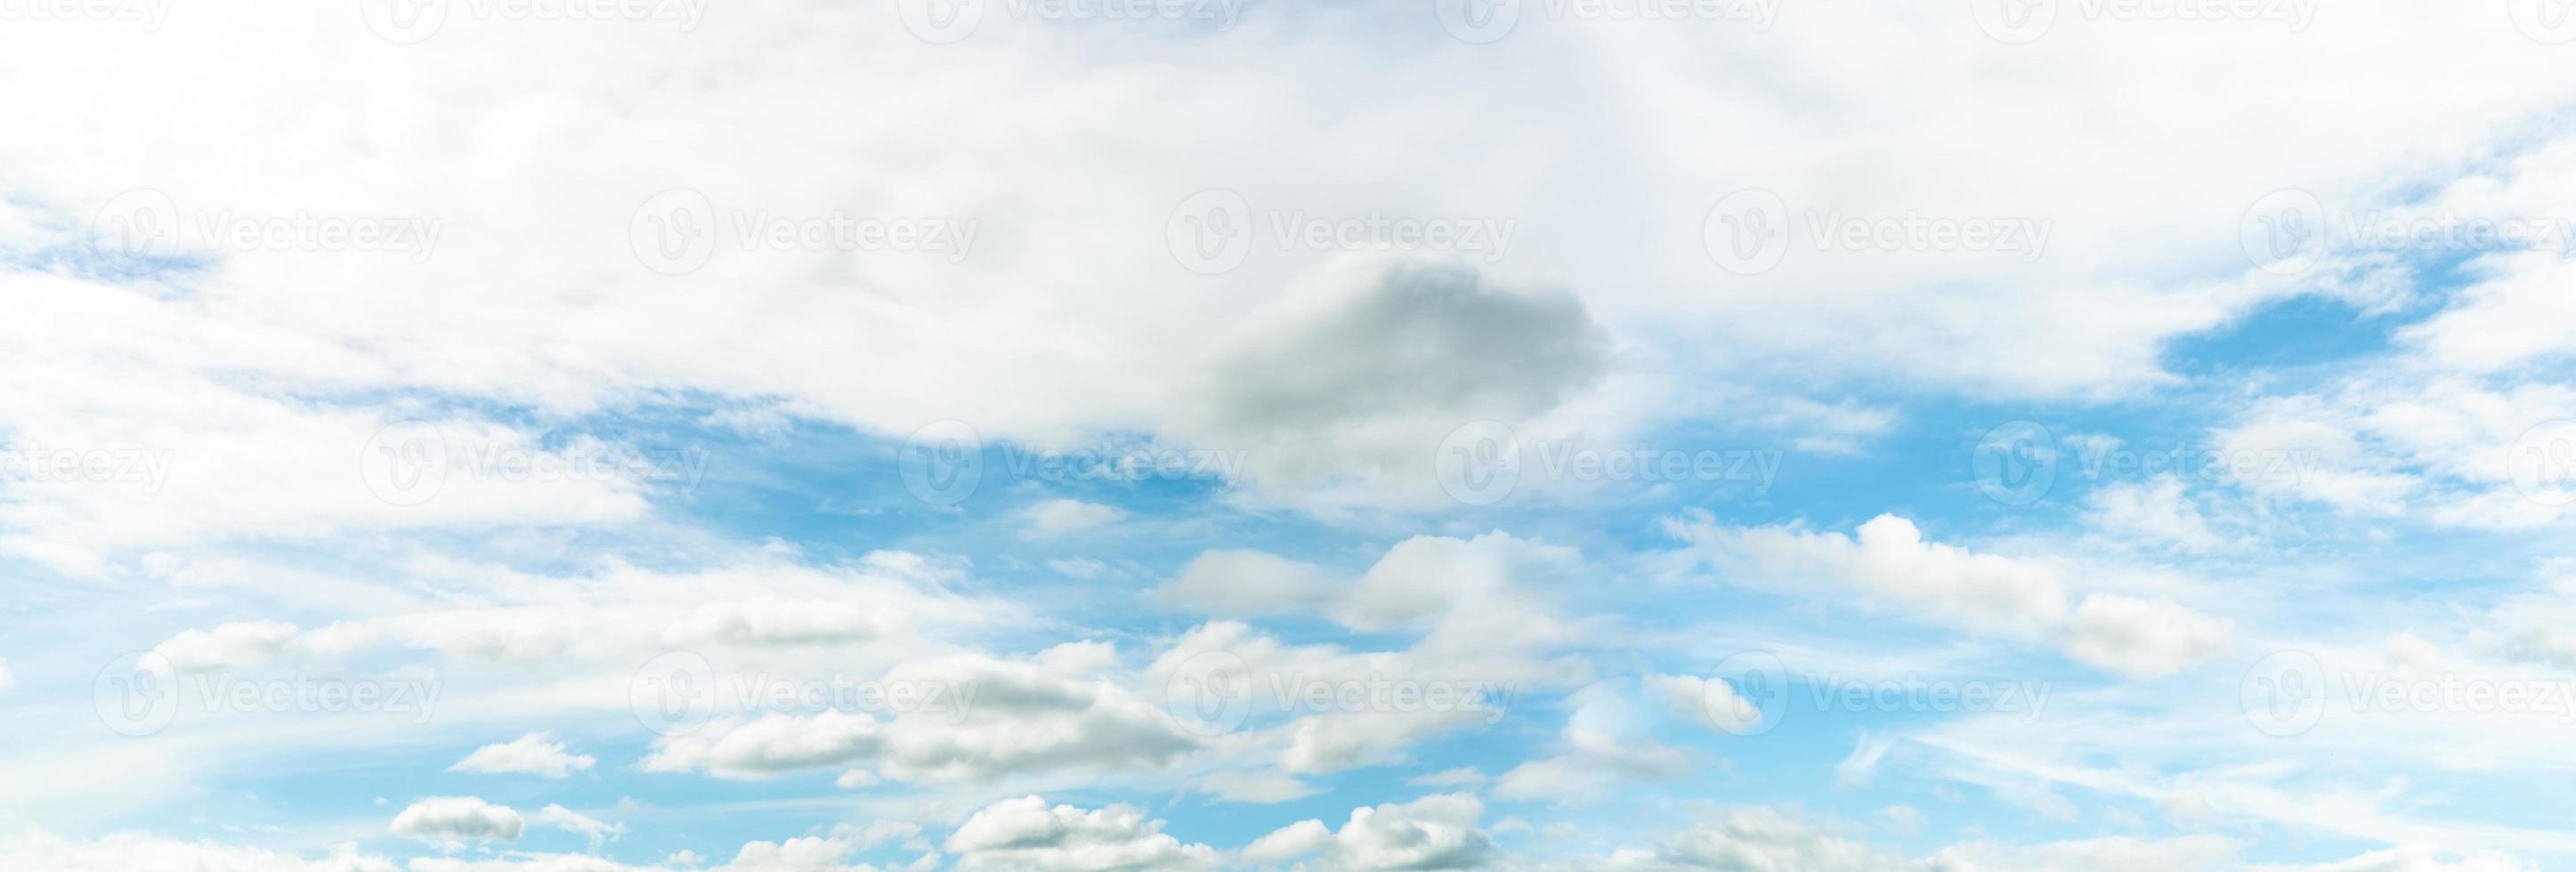 panoramisch uitzicht op blauwe lucht en witte wolken abstracte achtergrond. wolkenlandschap achtergrond. blauwe lucht en pluizige witte wolken op zonnige dag. natuur weer. mooie blauwe lucht voor gelukkige dag achtergrond. foto